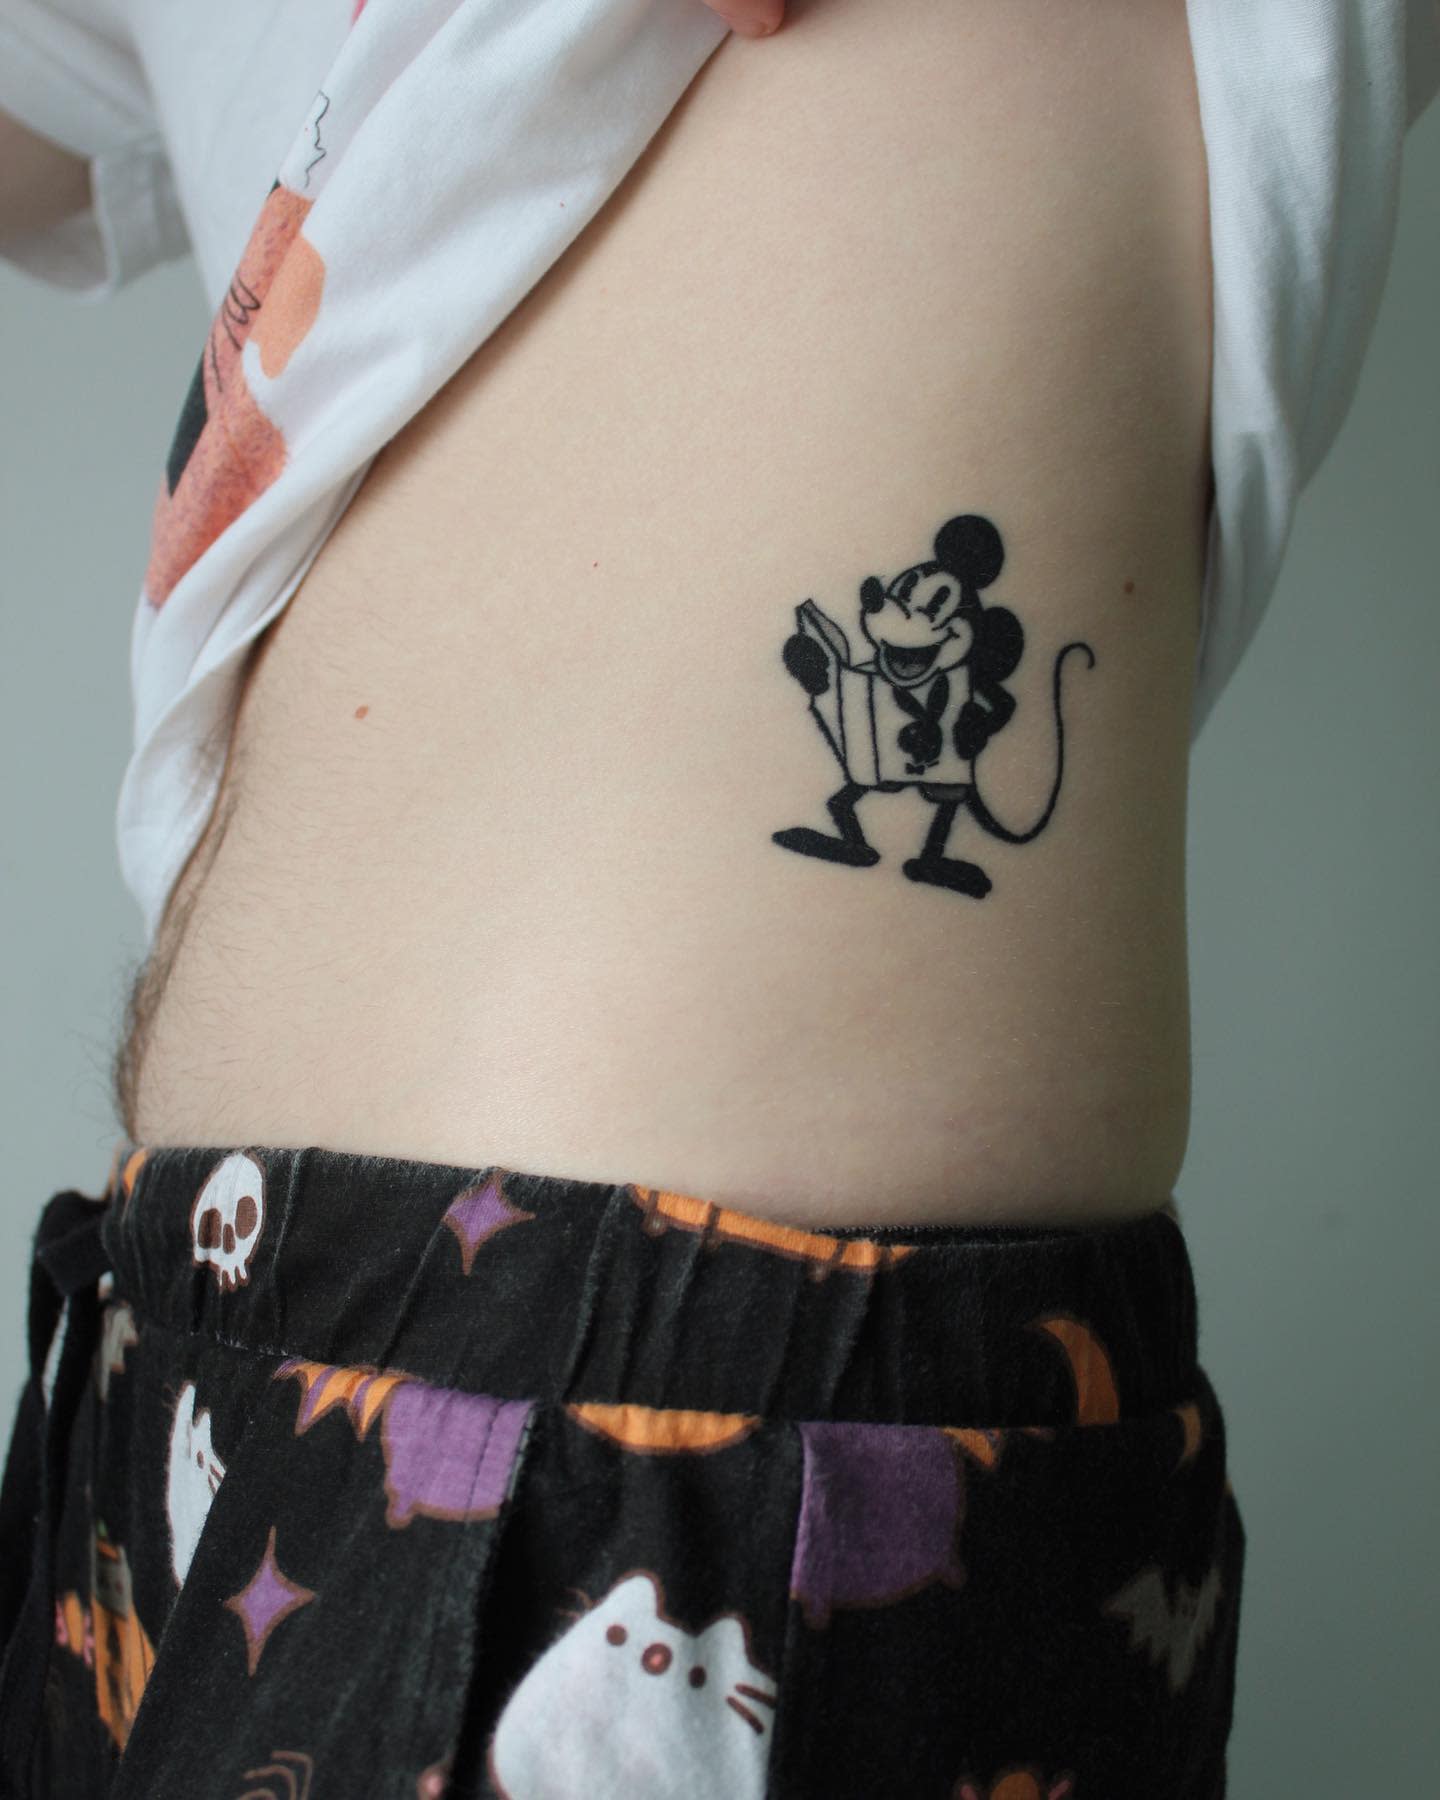 Tatuaje De Mickey Mouse Negro -transpeoplearemagic